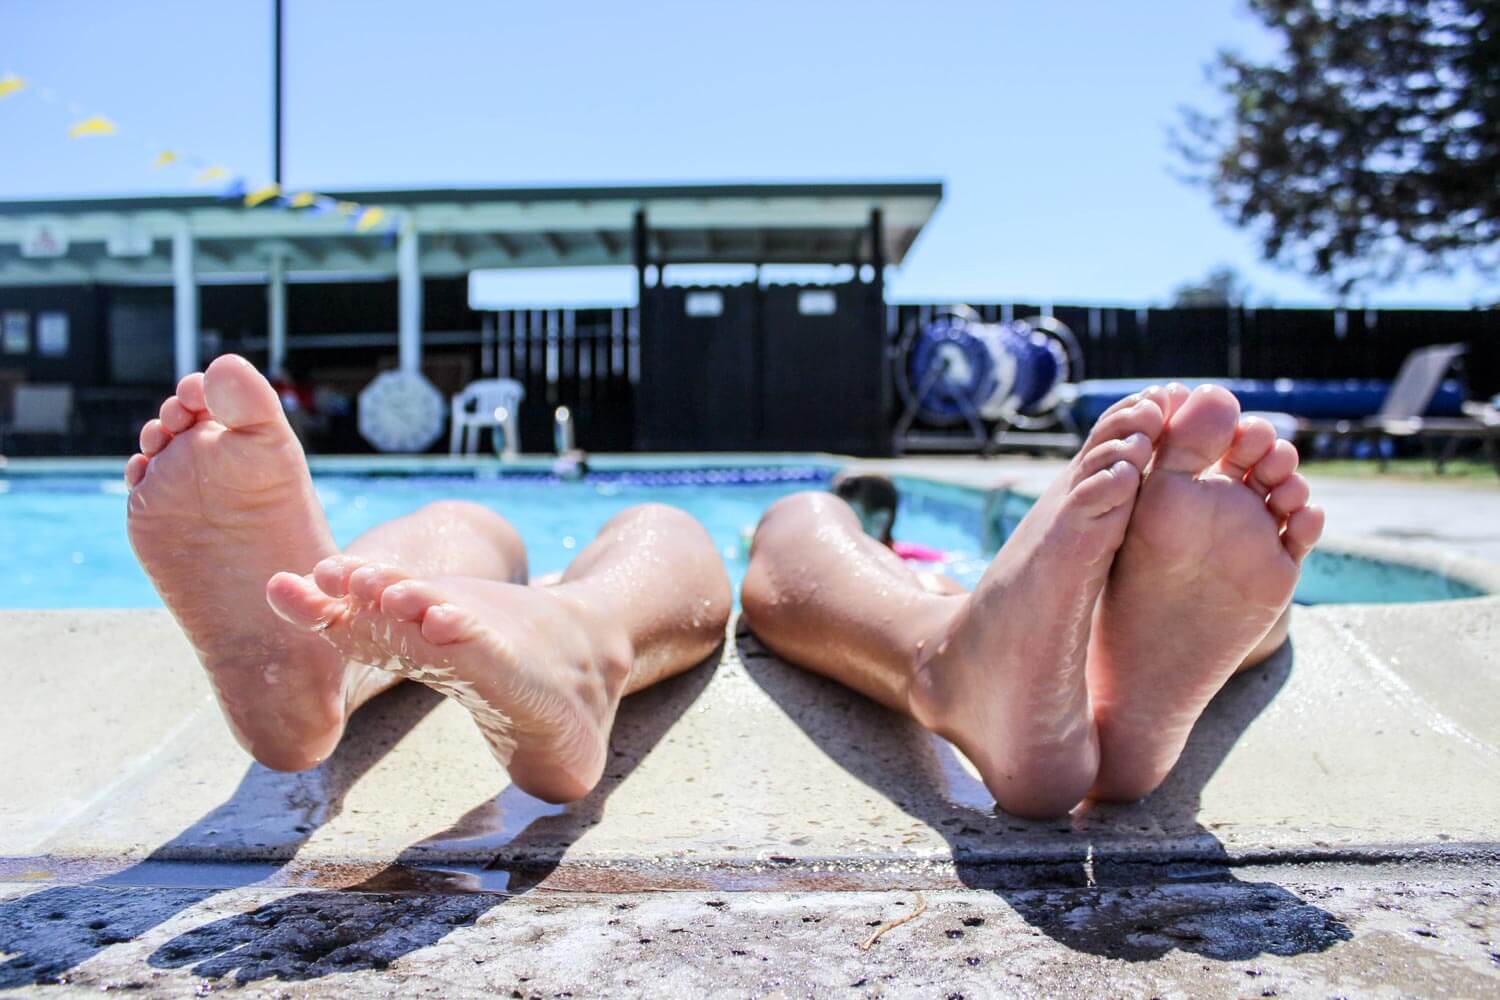 Feet outside pool